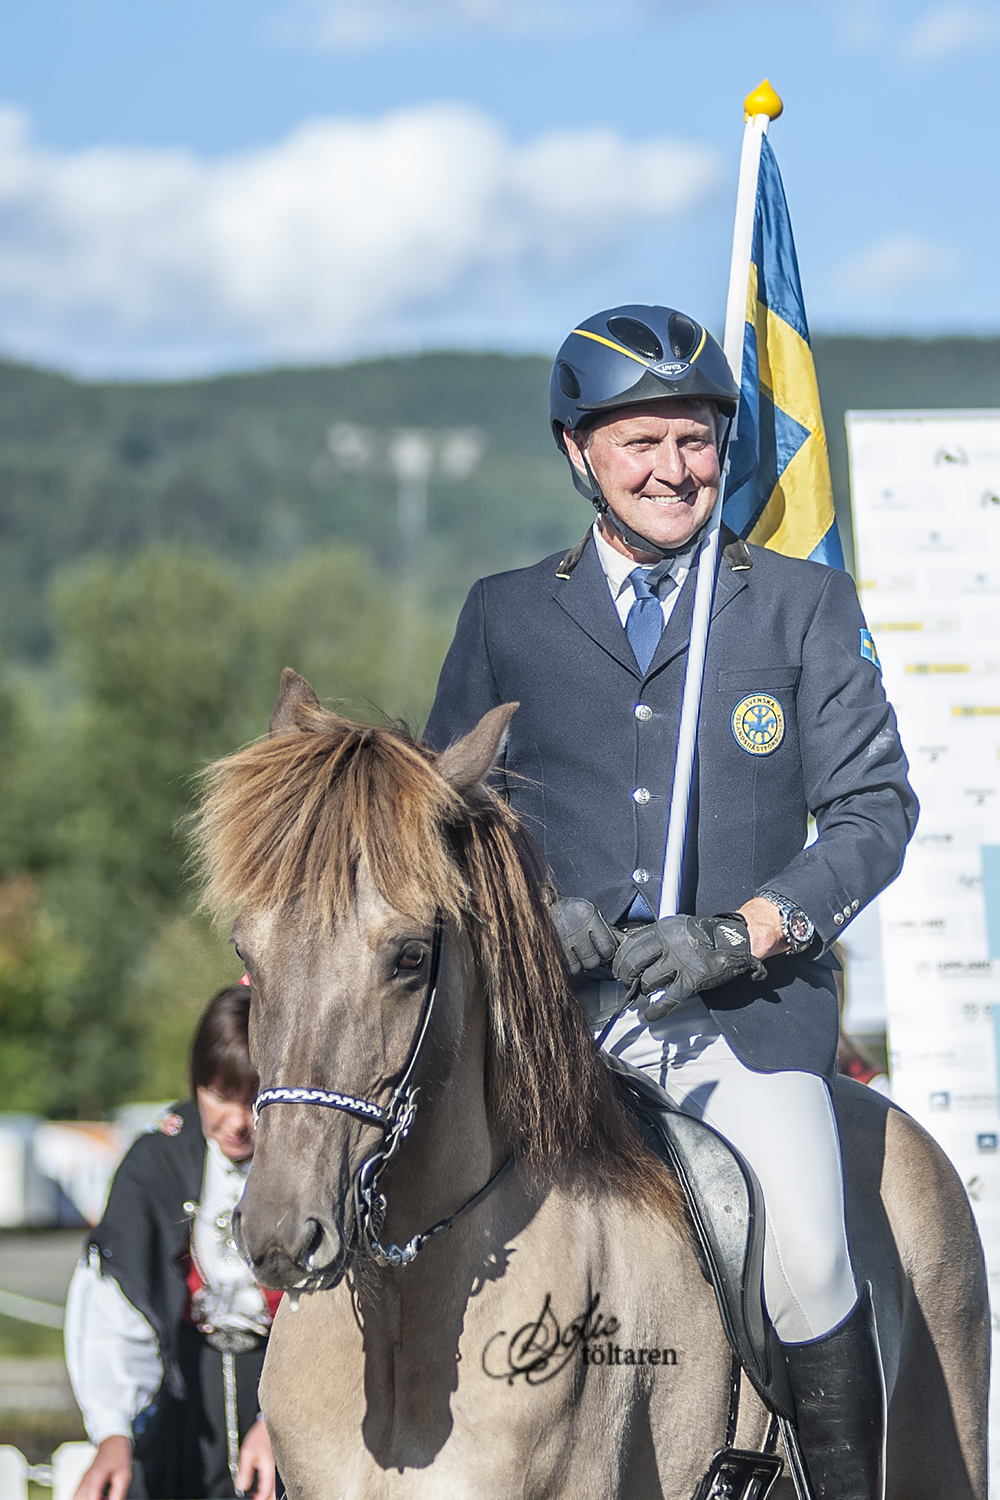 Magnús och Valsa! Vinnare av medaljen i femgångskombinationen Foto: Sofie Lahtinen Carlsson